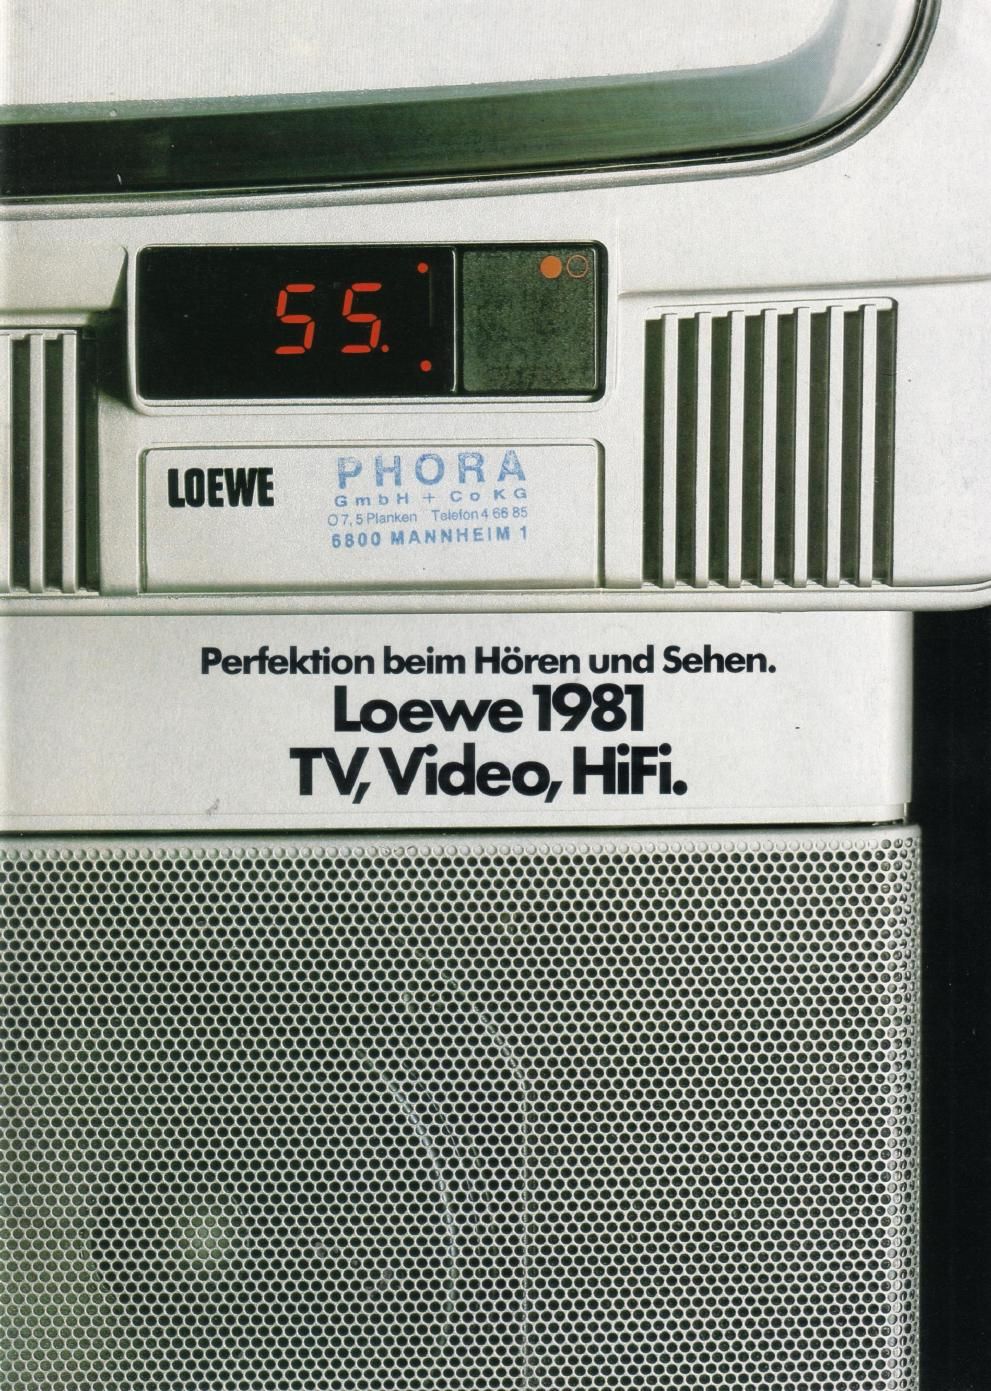 loewe 1981